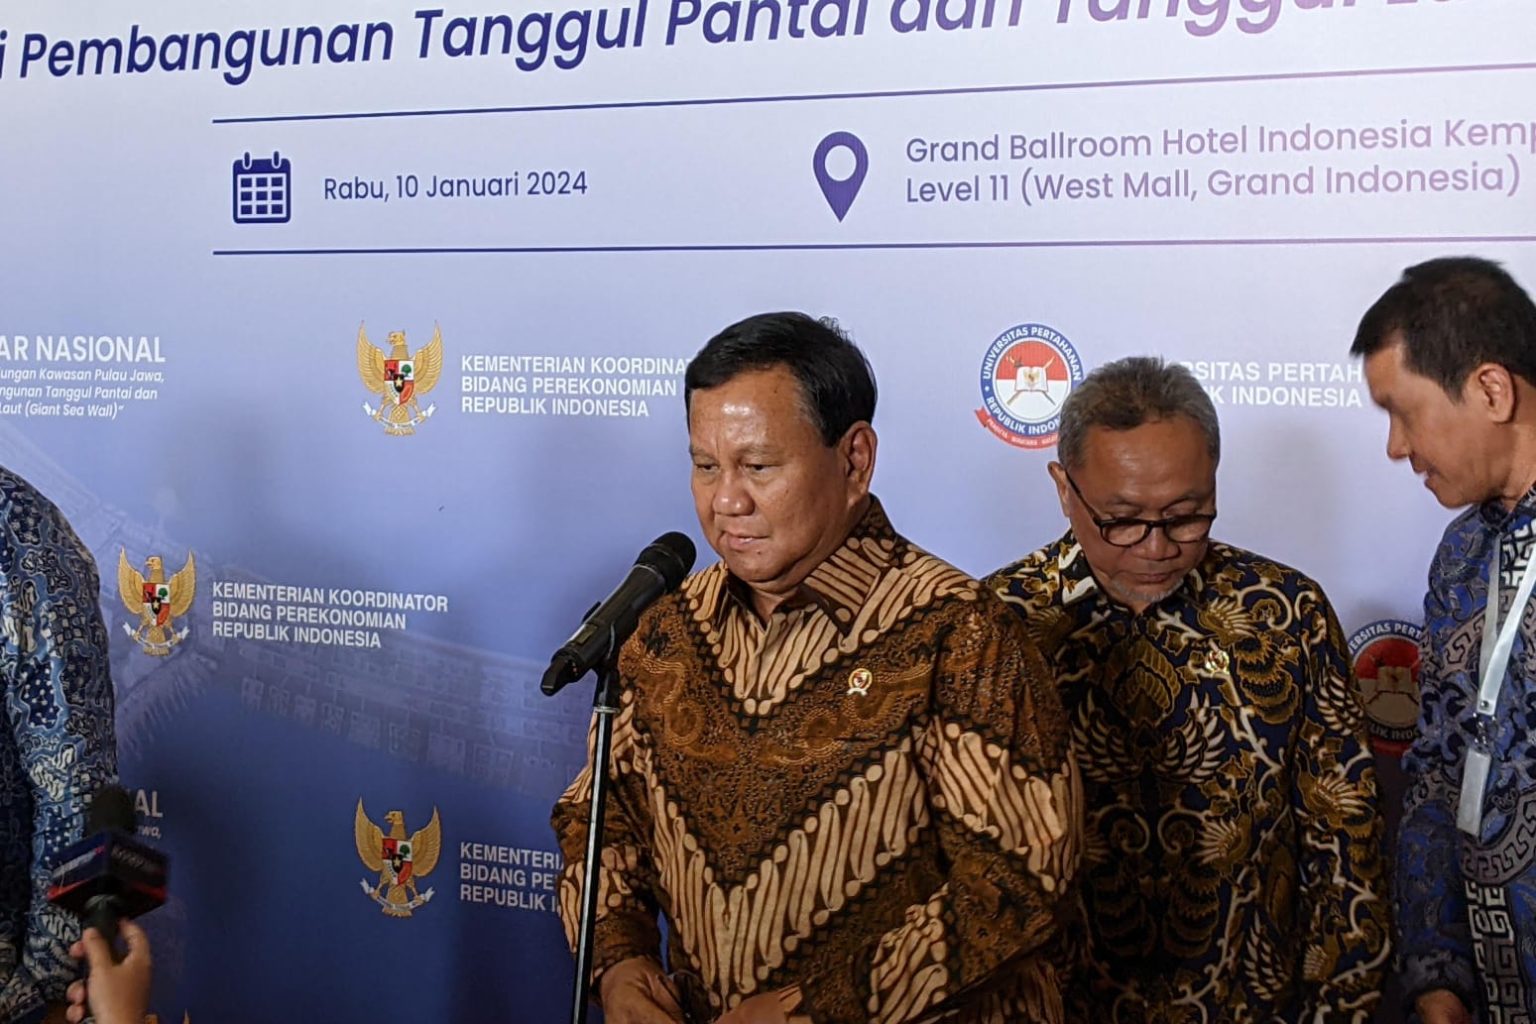 Menhan Prabowo Subianto mau bangun rumah panggung dan terapung di Pantura harganya Rp150 juta (Muslimin Trisyuliono)